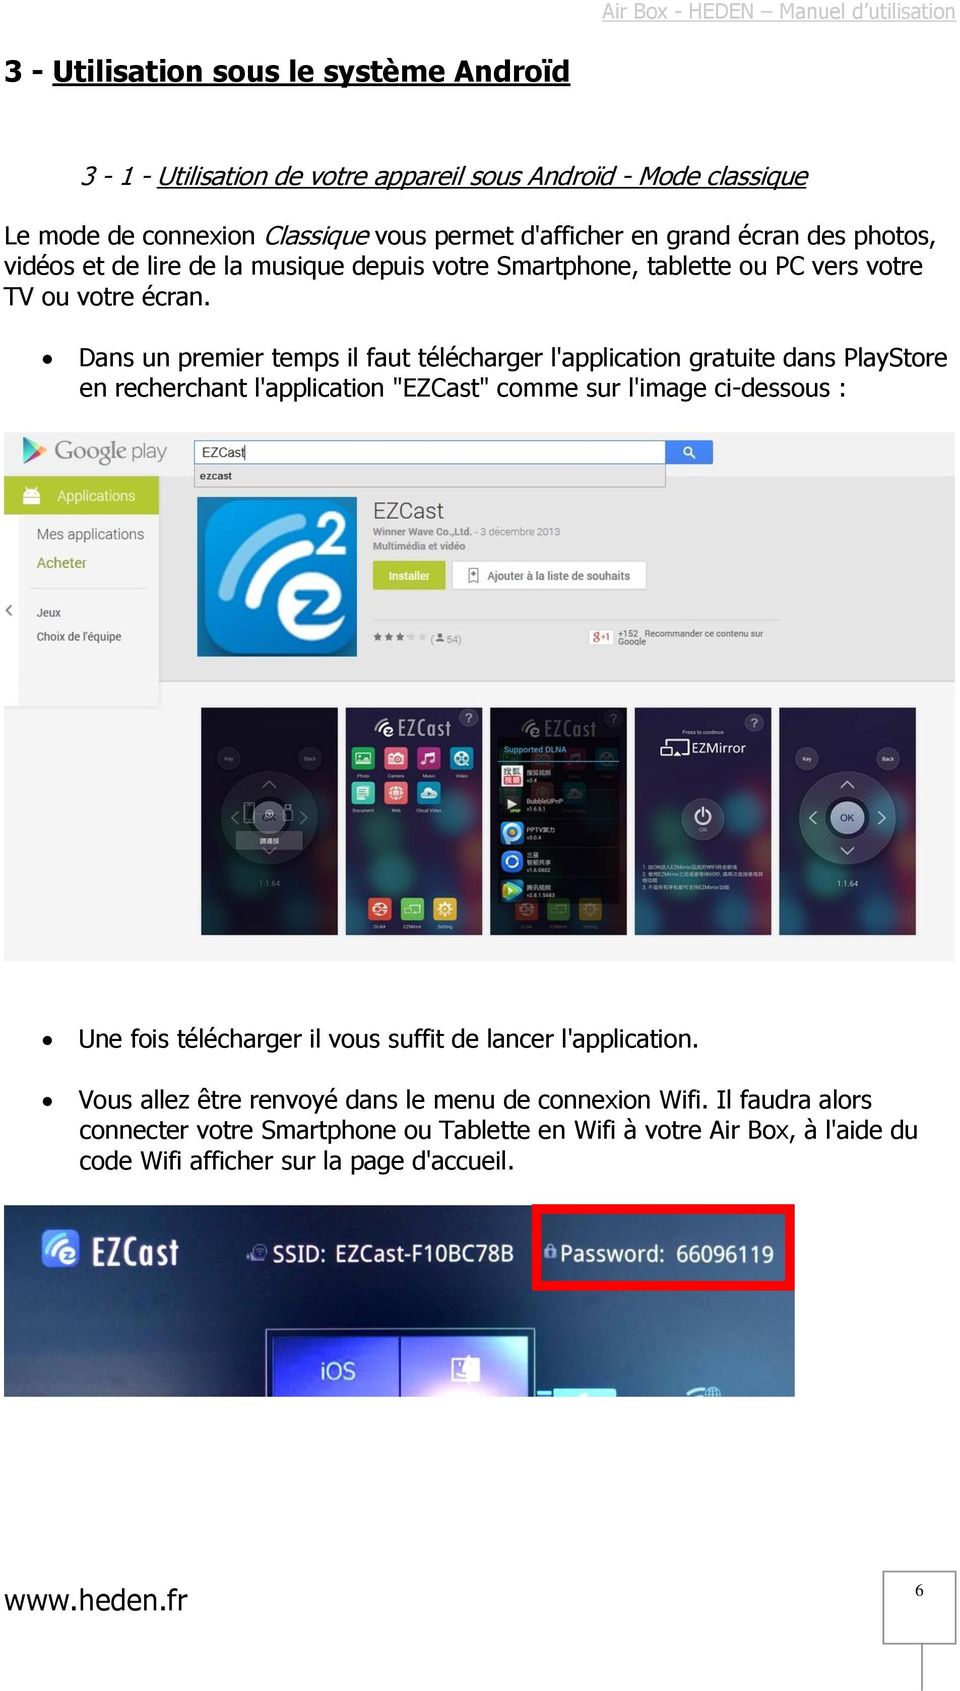 Dans un premier temps il faut télécharger l'application gratuite dans PlayStore en recherchant l'application "EZCast" comme sur l'image ci-dessous : Une fois télécharger il